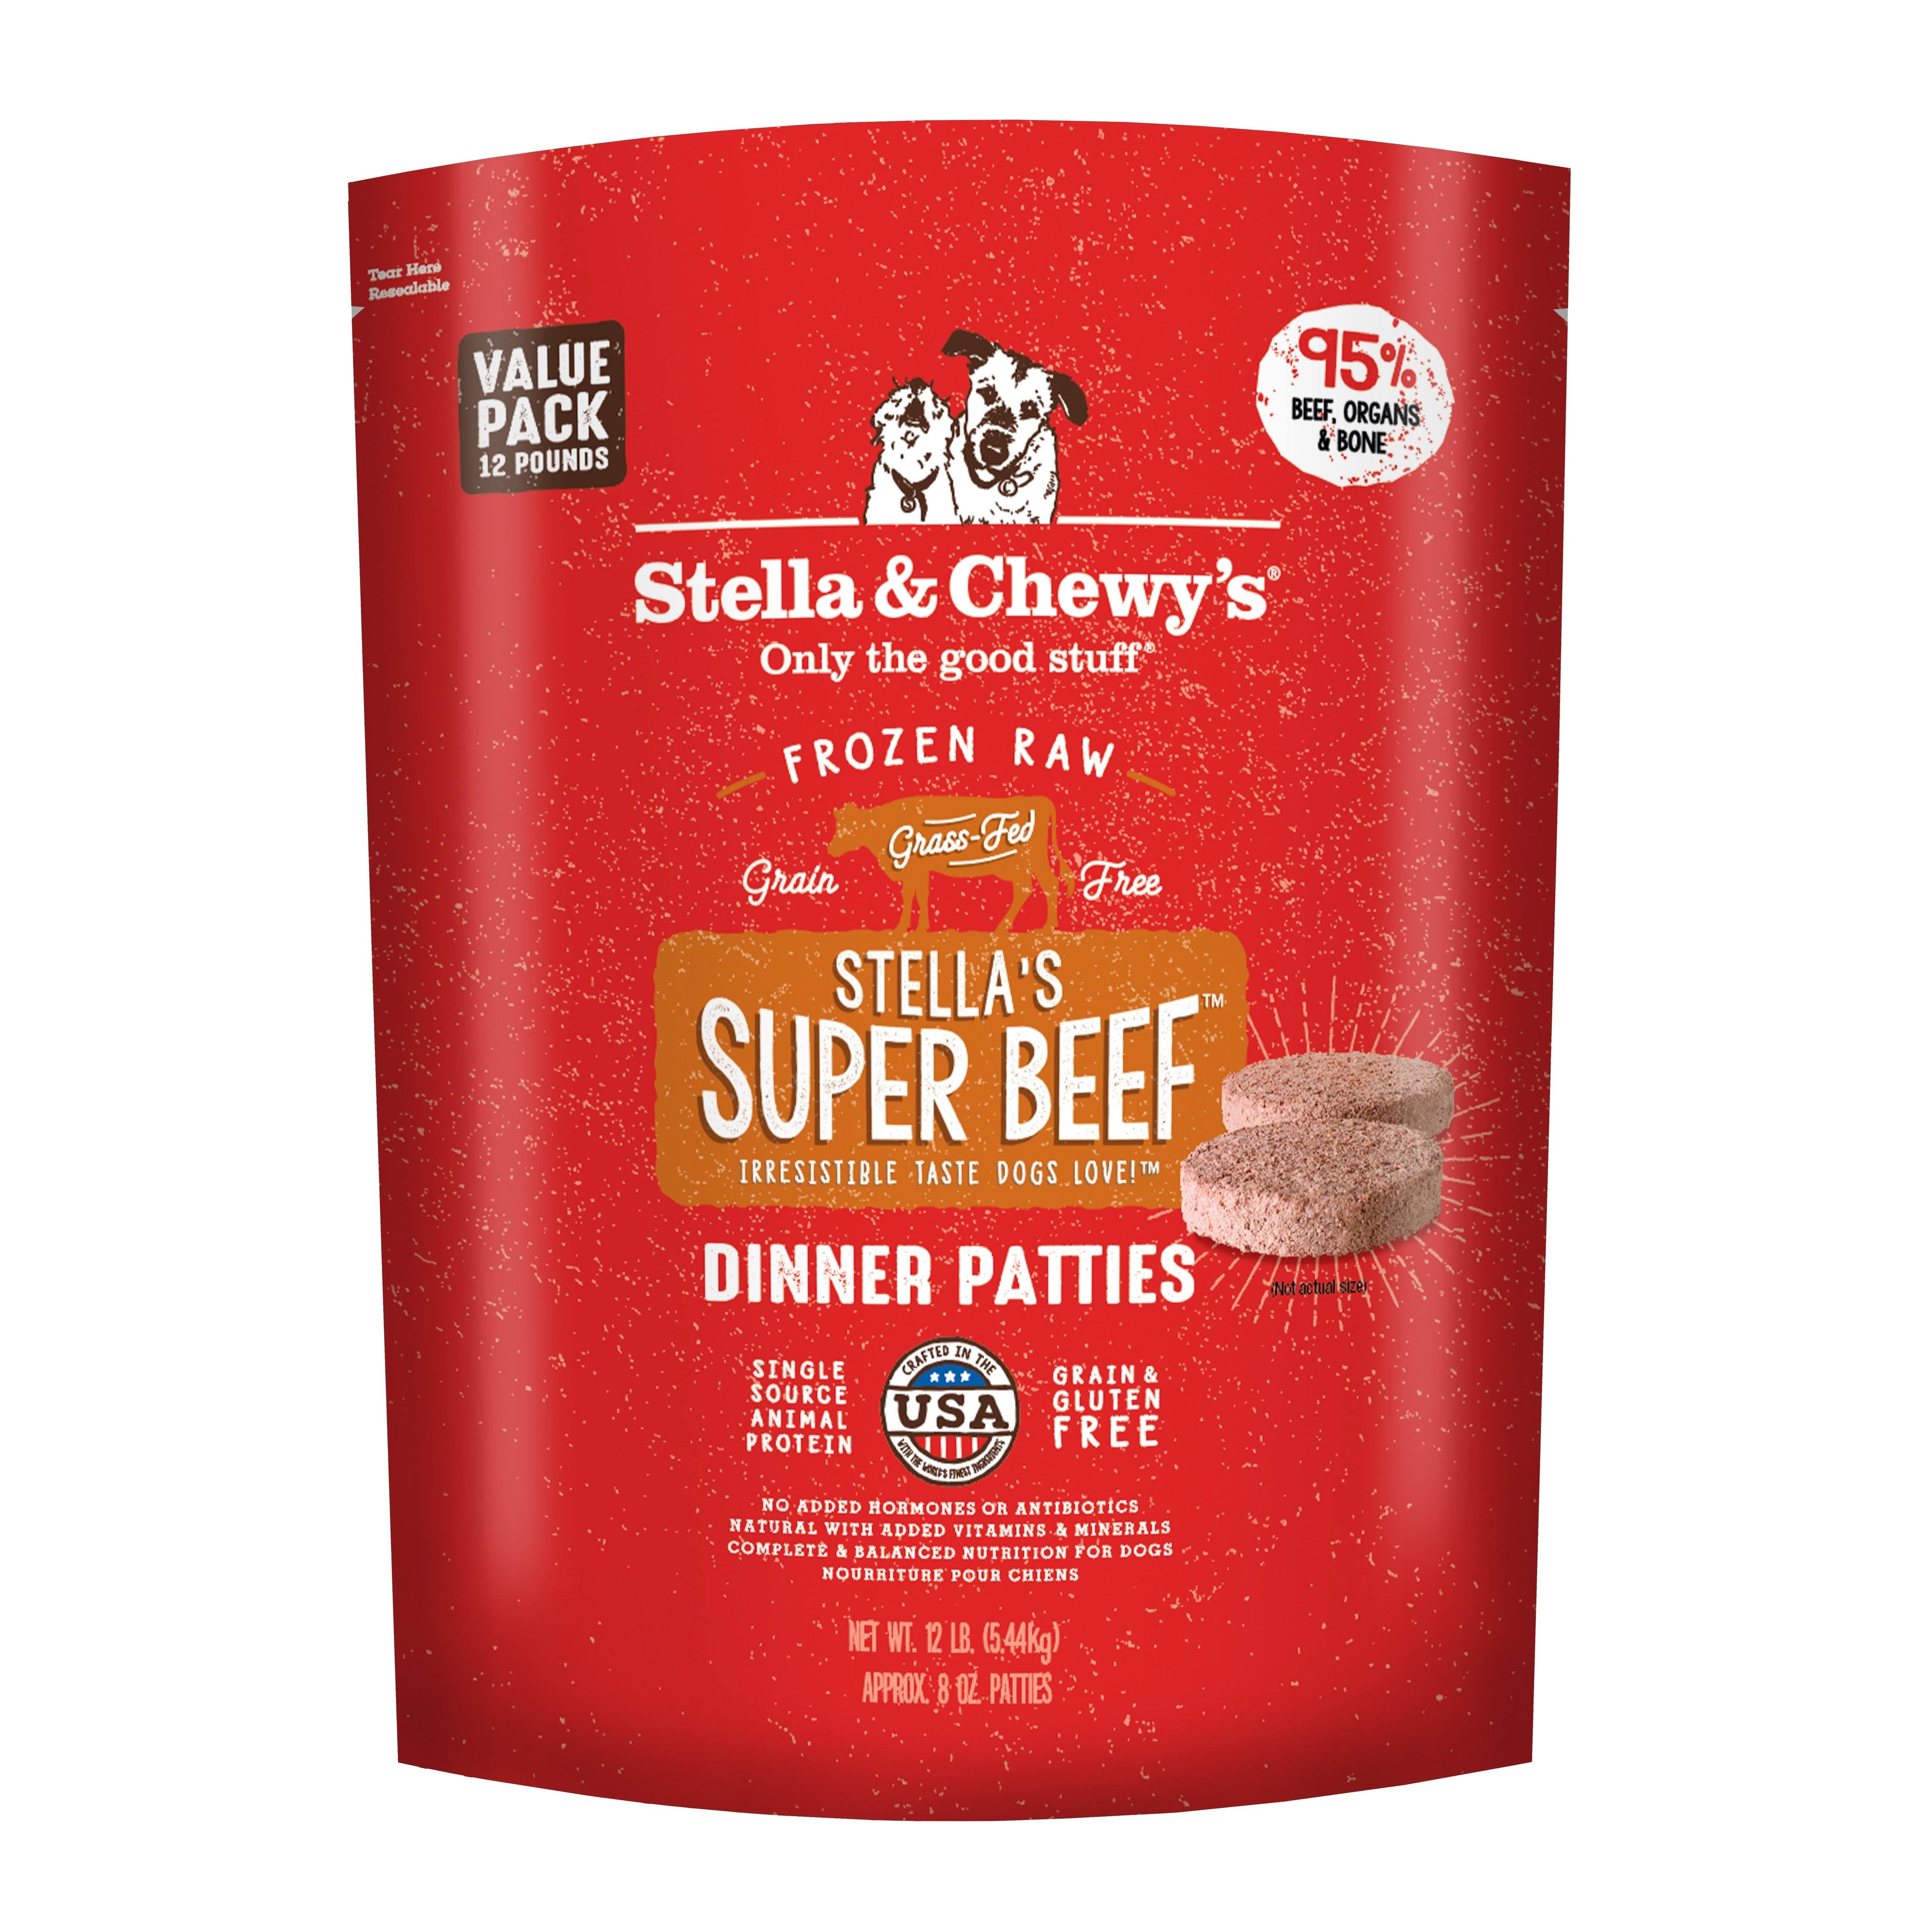 Stella's Super Beef Frozen Raw Dinner Patties